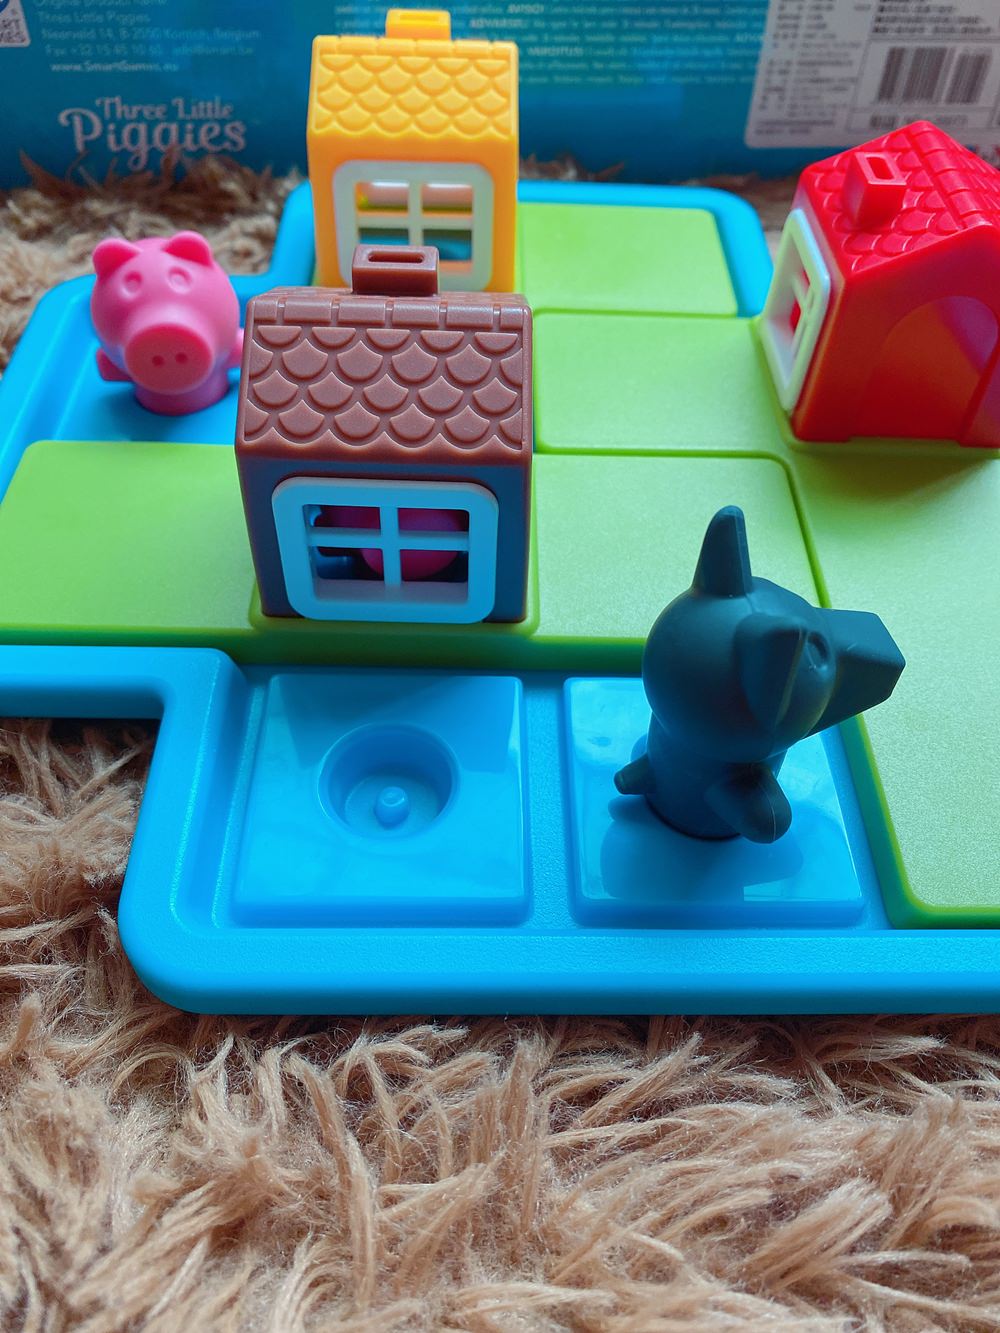 比利時smart games兒童桌遊推薦 三隻小豬玩法